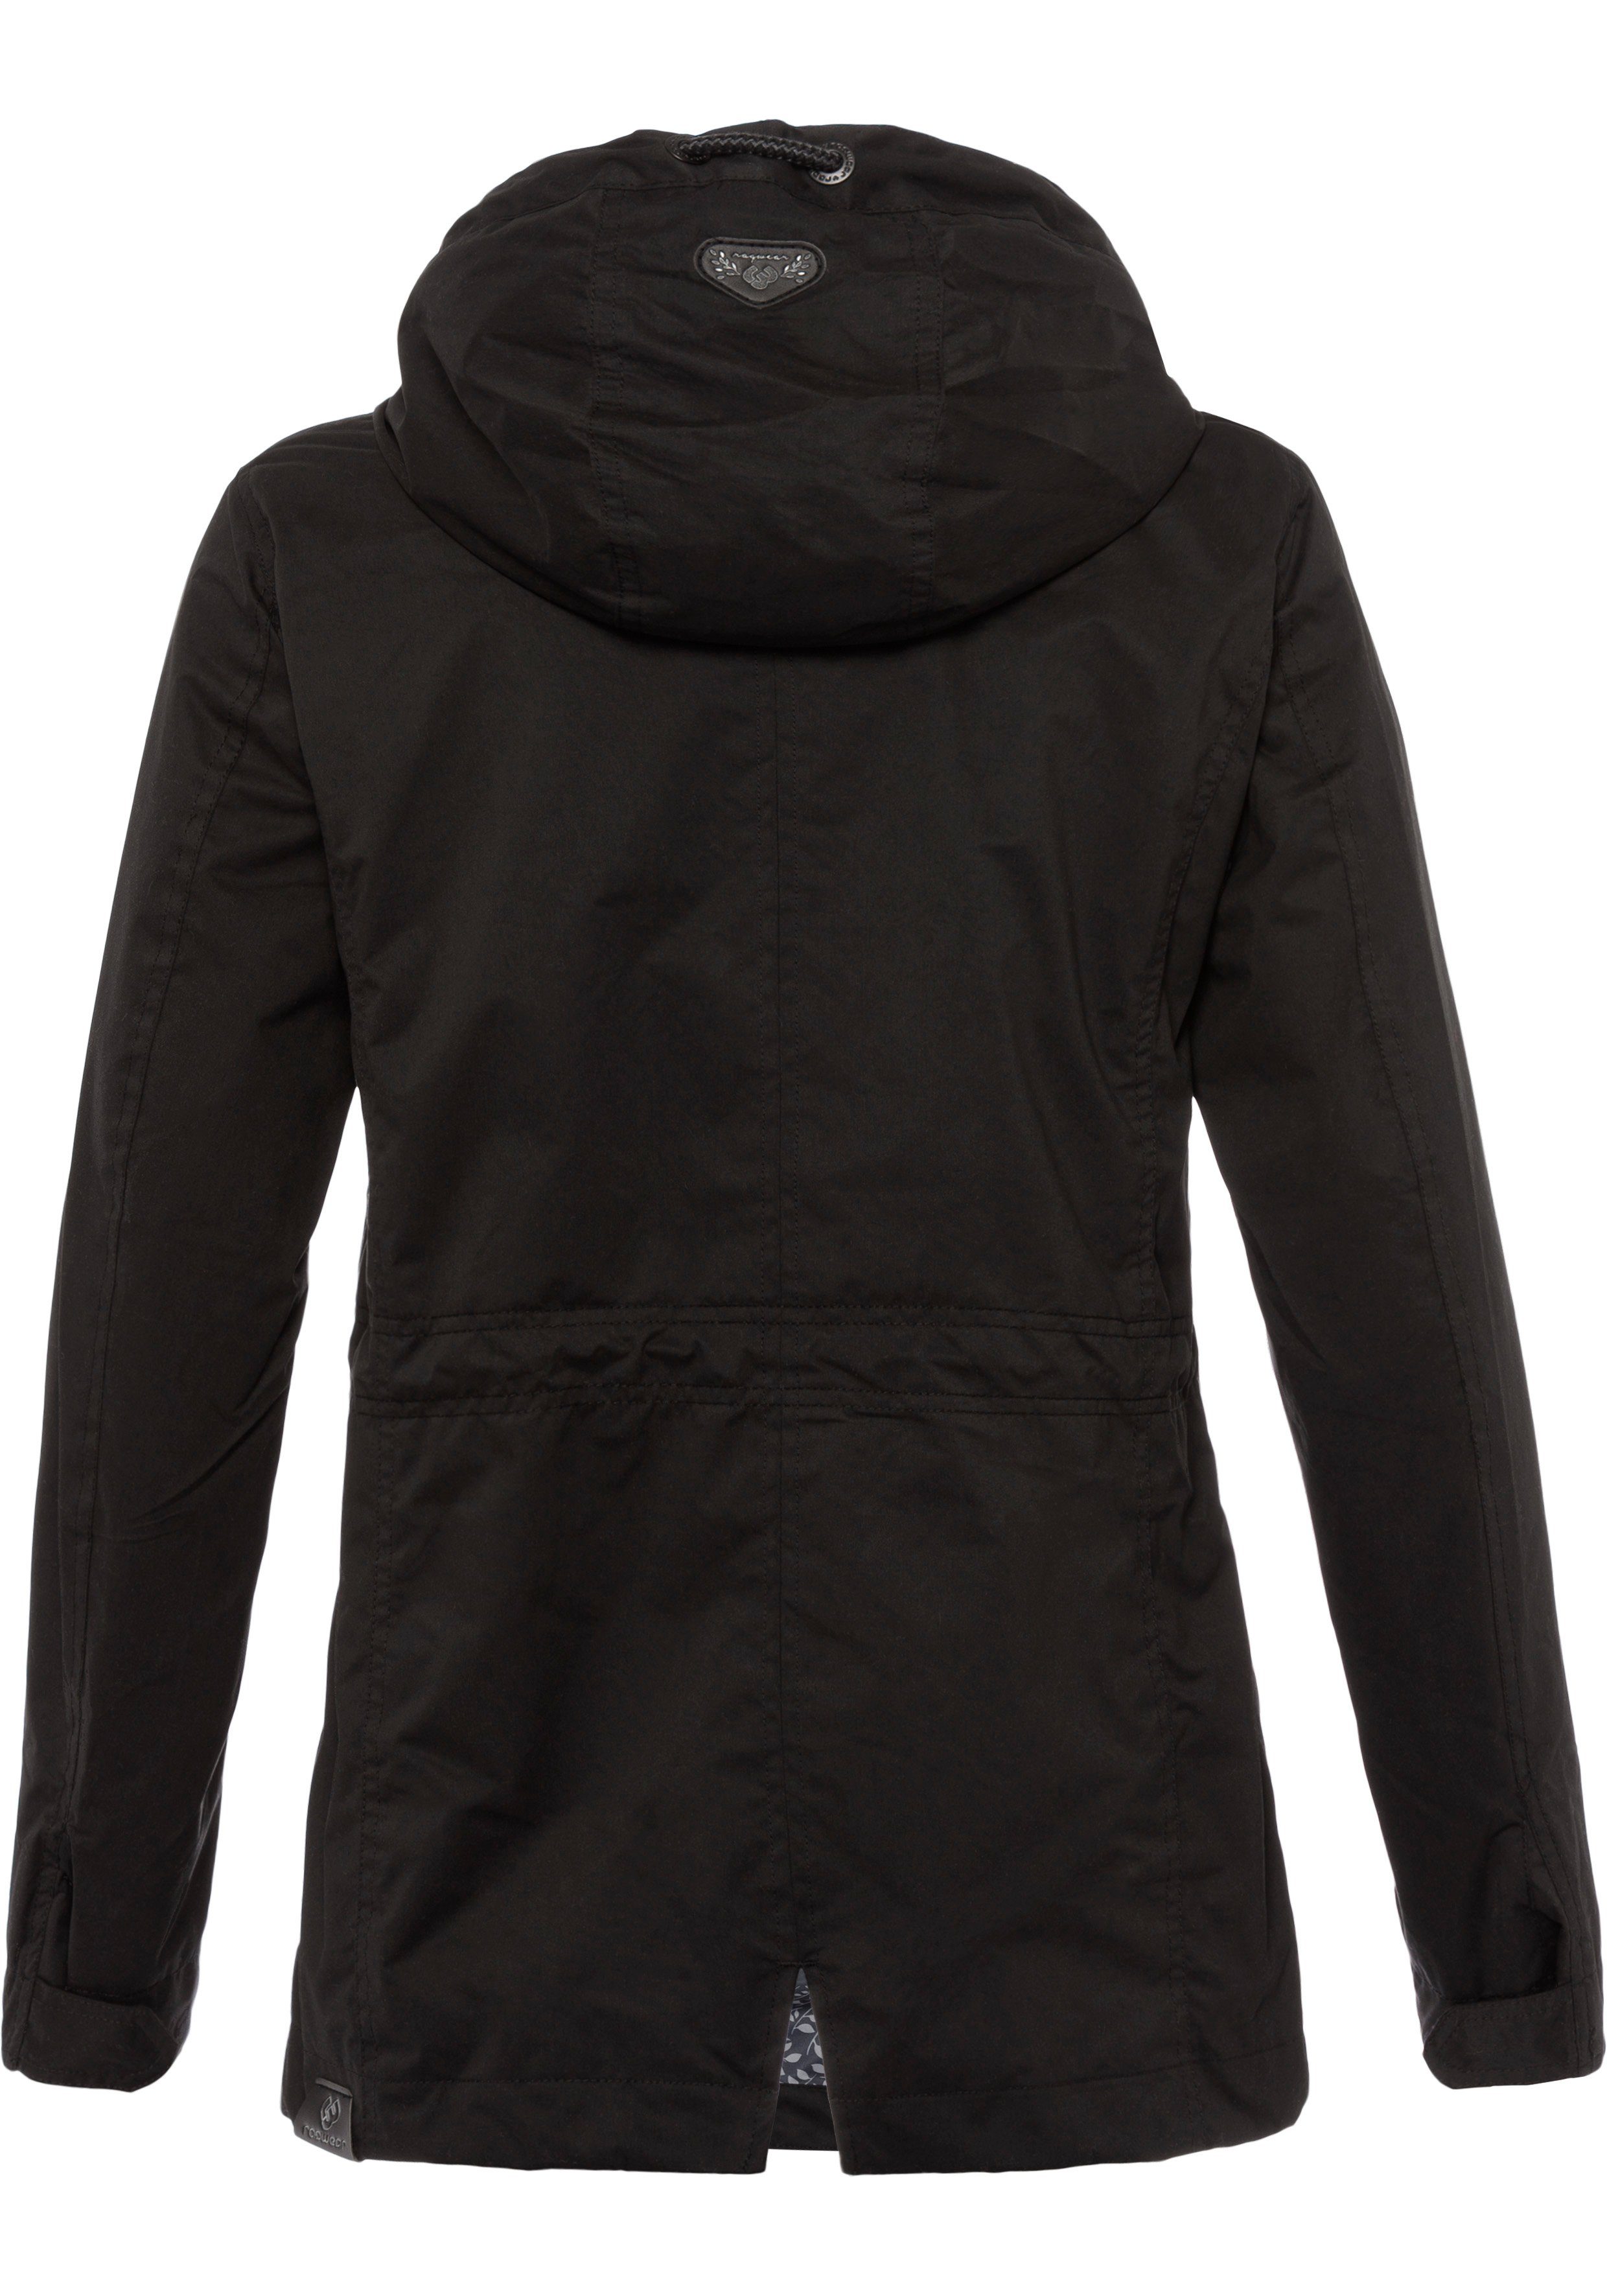 Ragwear Funktionsjacke LENCA stylische Übergangsjacke 1010 Waterproof black fabric